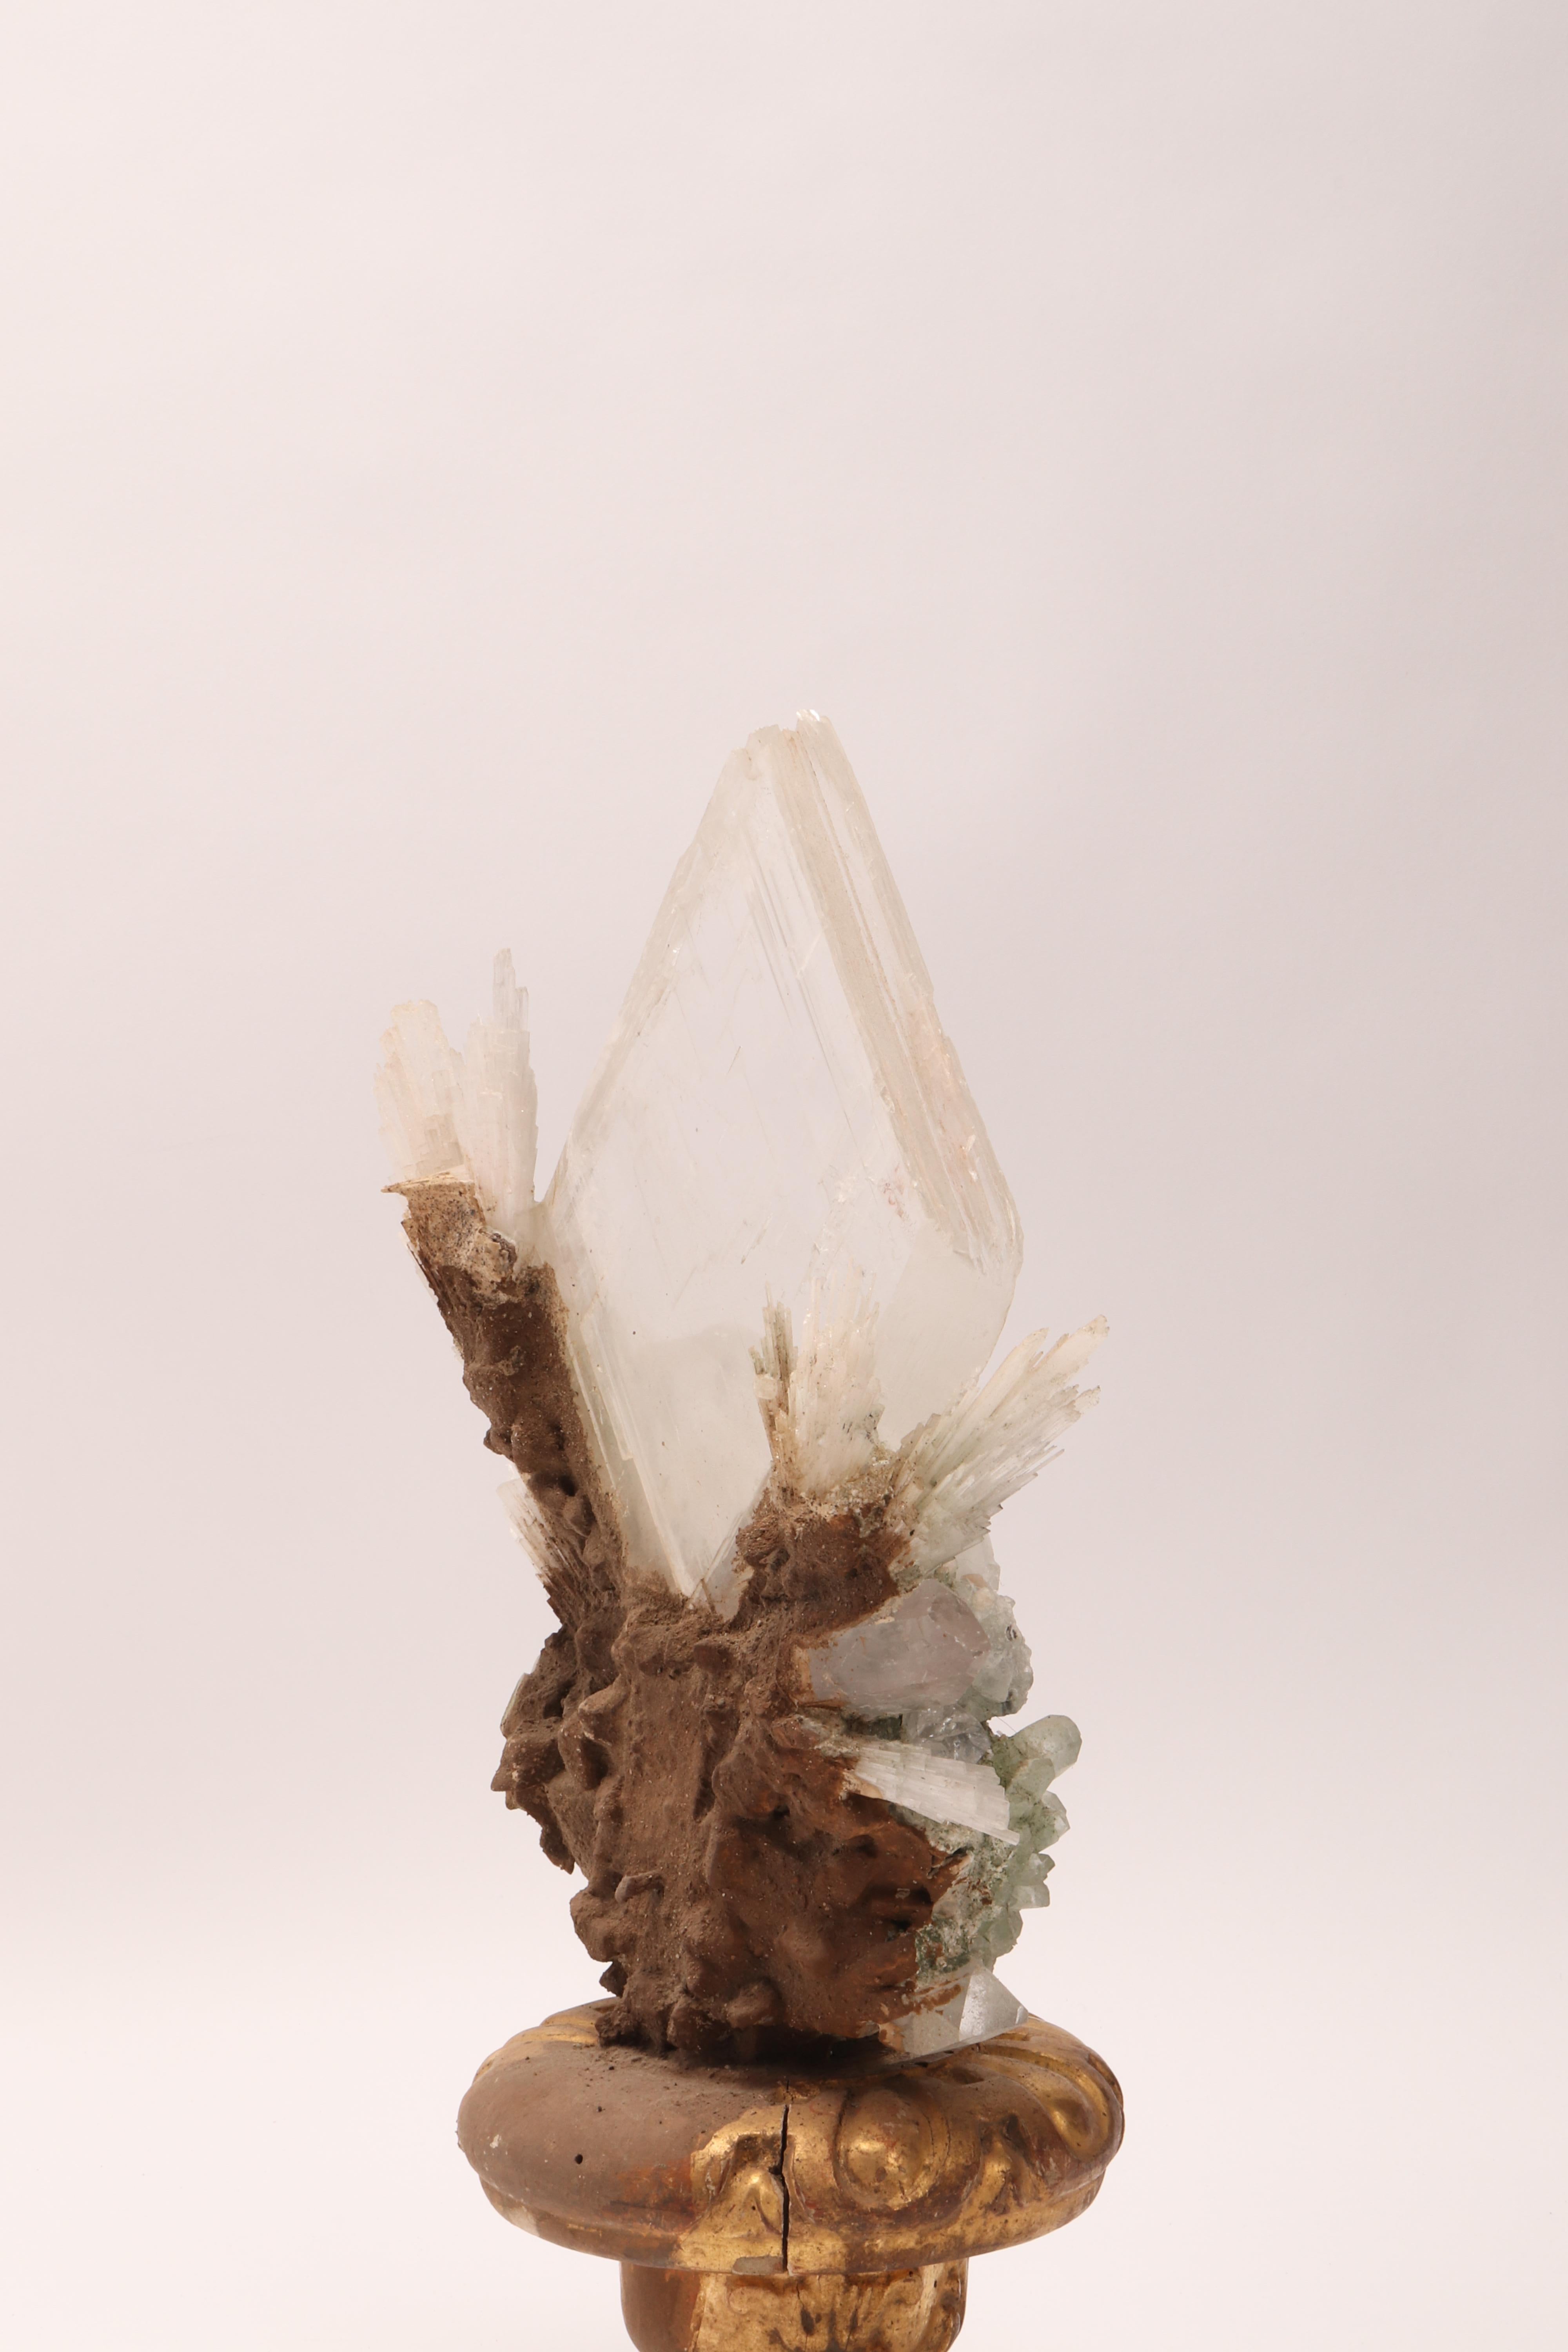 Late 19th Century Natural Specimen Apophyllite Quartz and Calcite Flowers Crystals, Italy, 1880